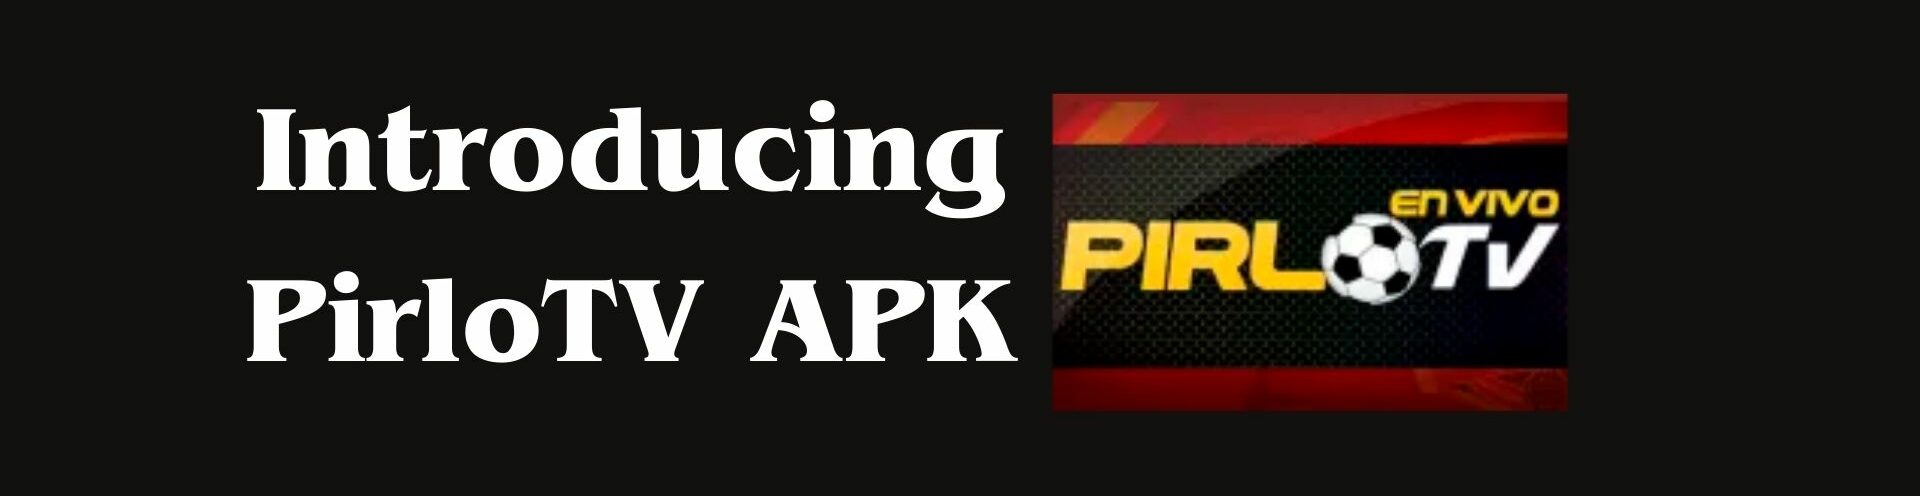 Introducing PirloTV APK